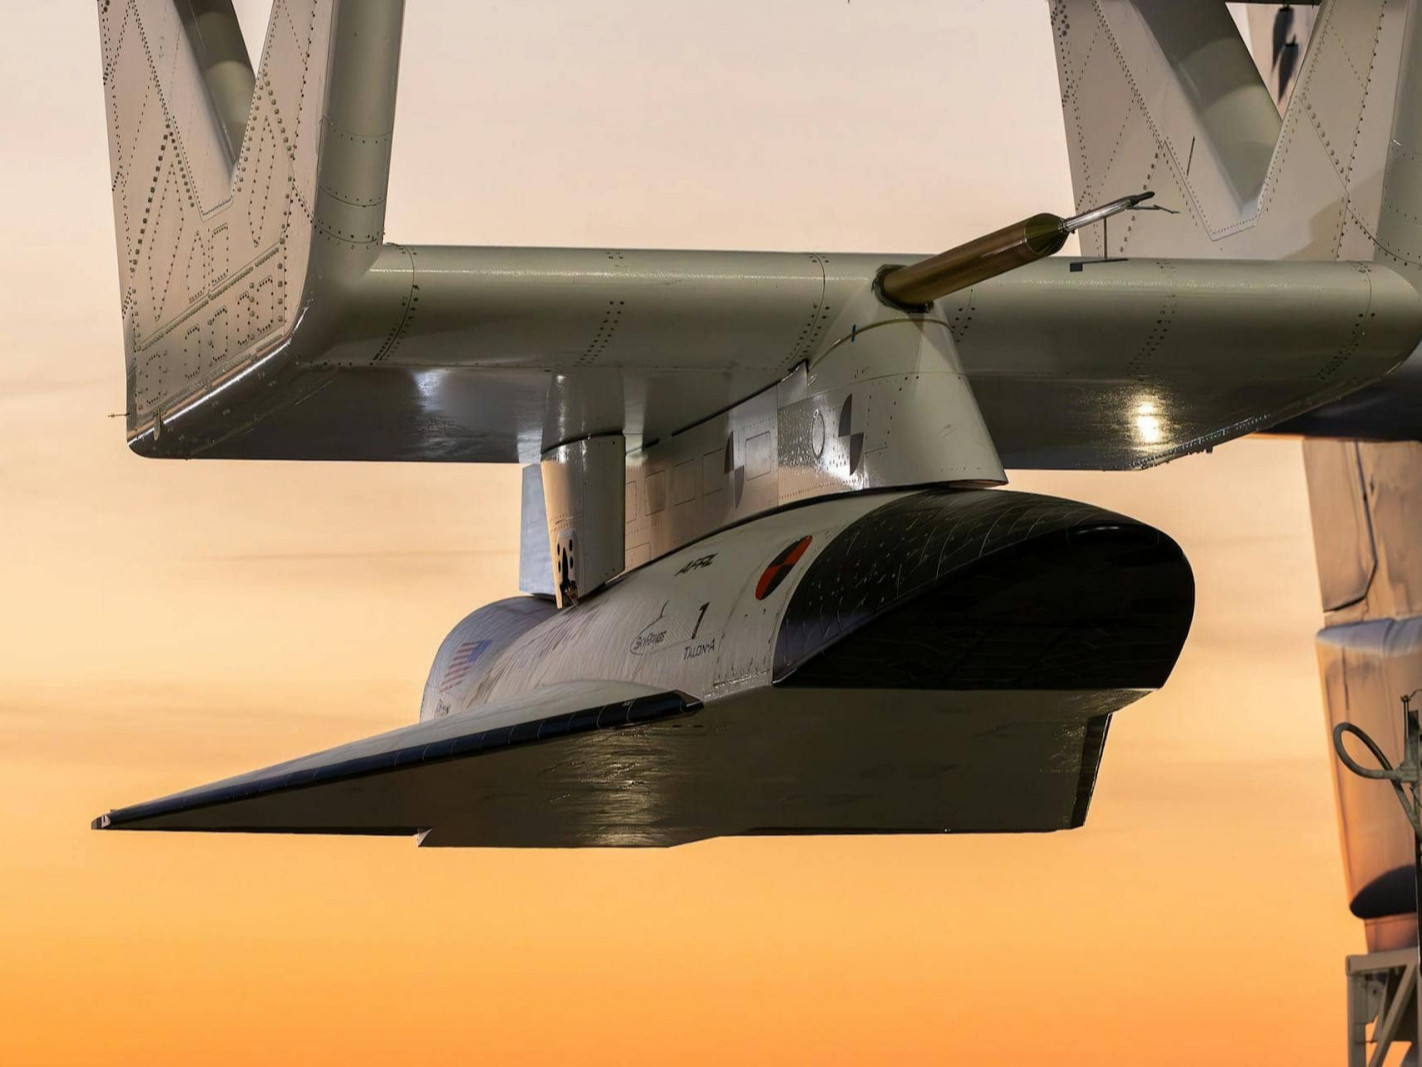  ВИДЕО: Дуунаас хурдан нисдэг аппарат болох “ТА-1”-г амжилттай туршжээ